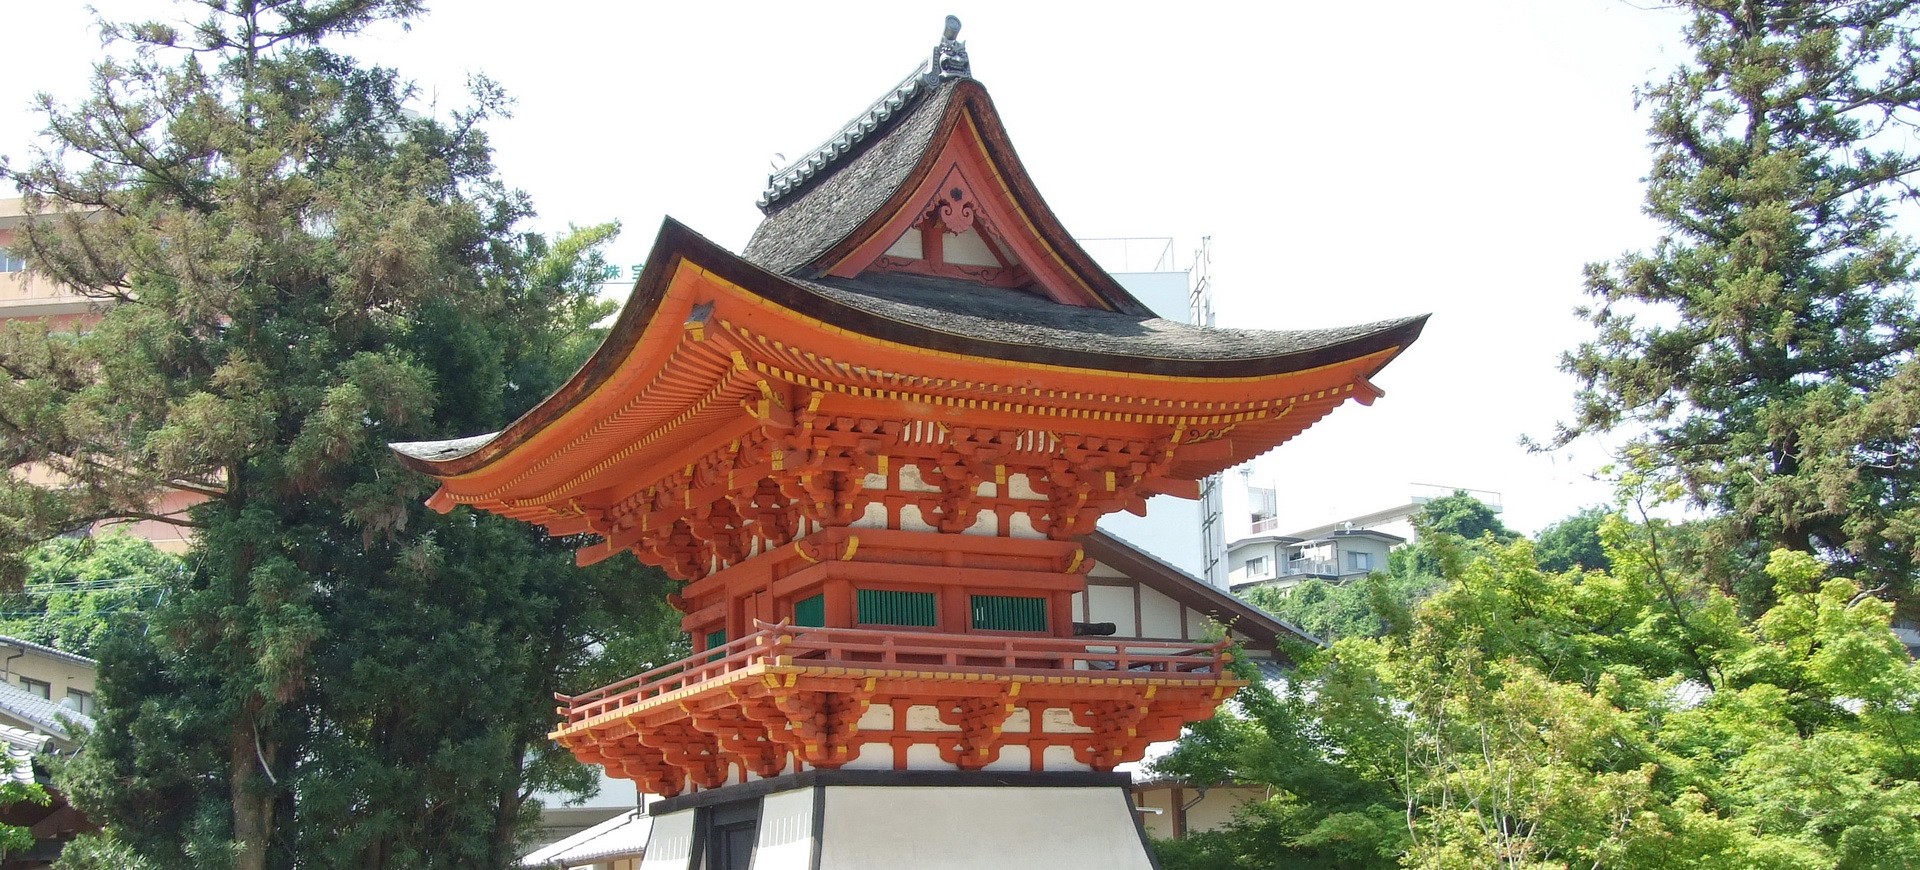 Japon Hiroshima Fudoin Pine Temple 001